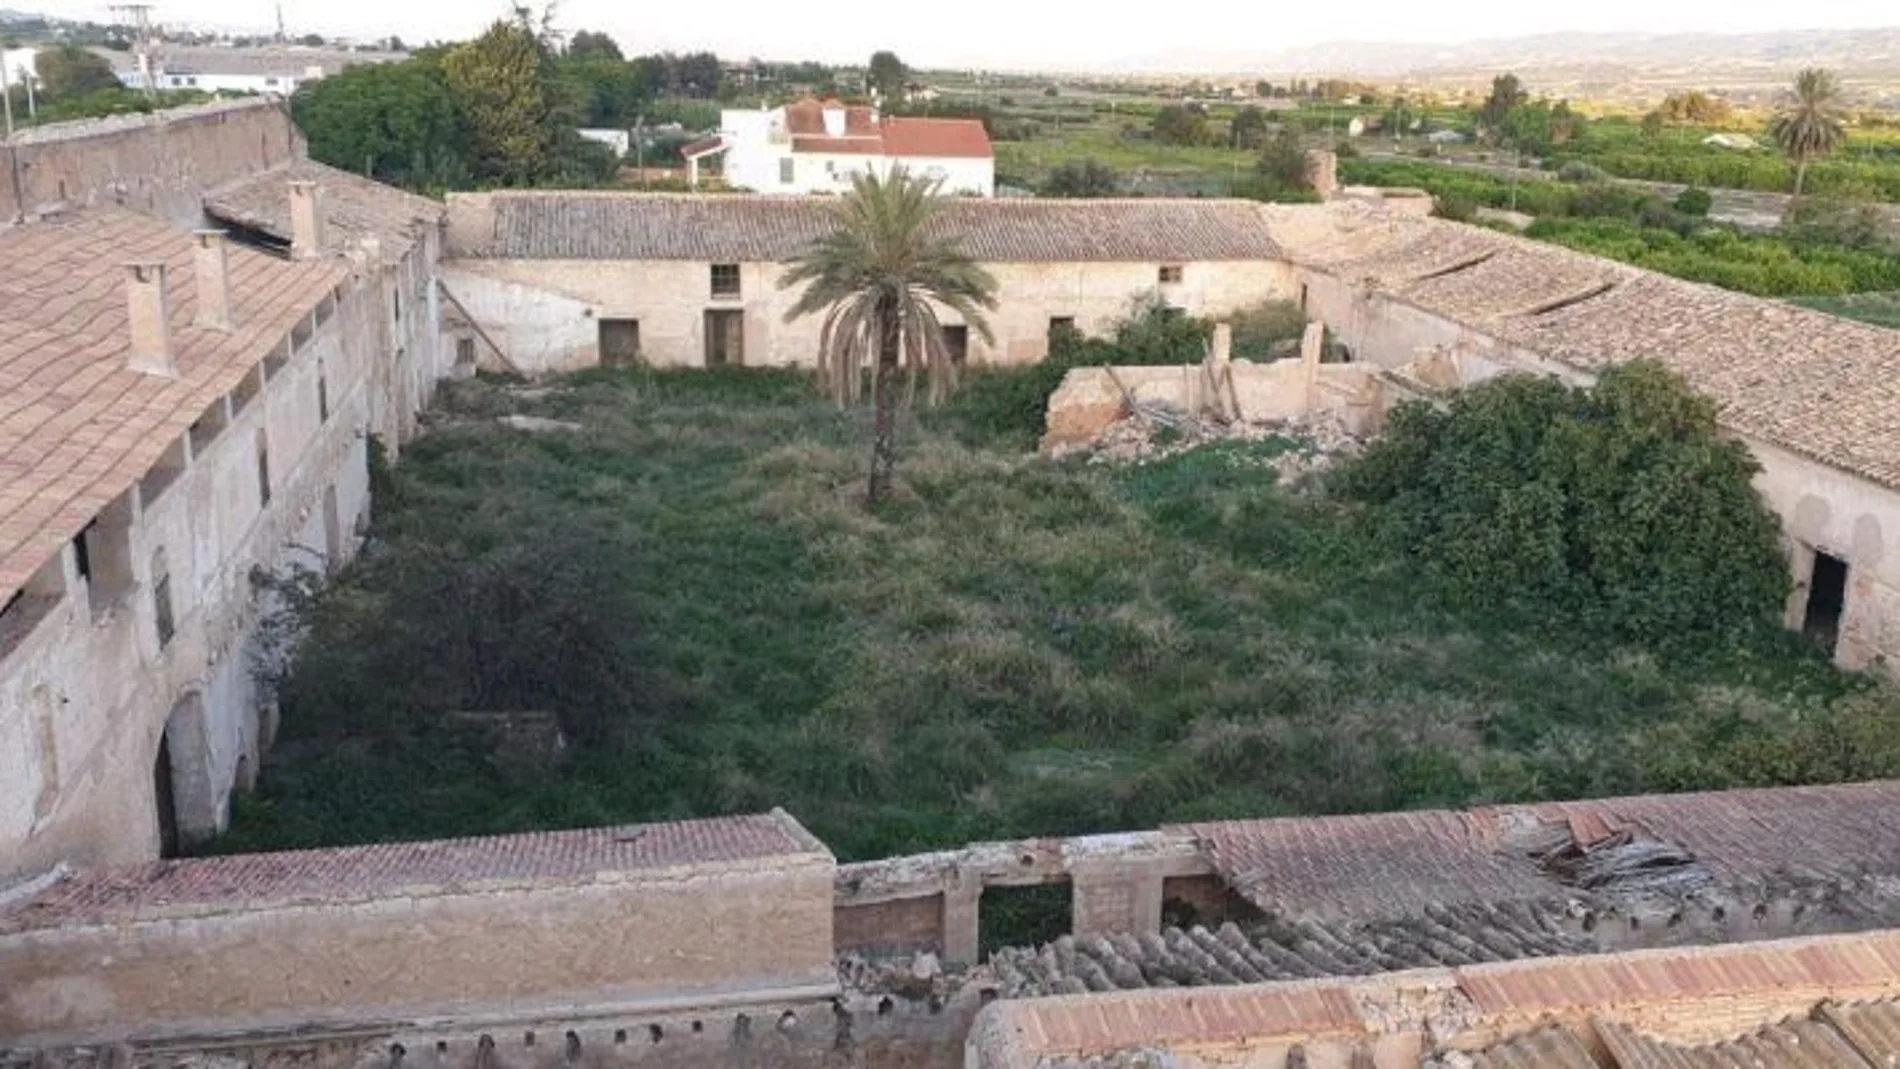 30 vecinos de Librilla adquirieron Las Posadas del Duque para conservar este enclave patrimonial neoclásico